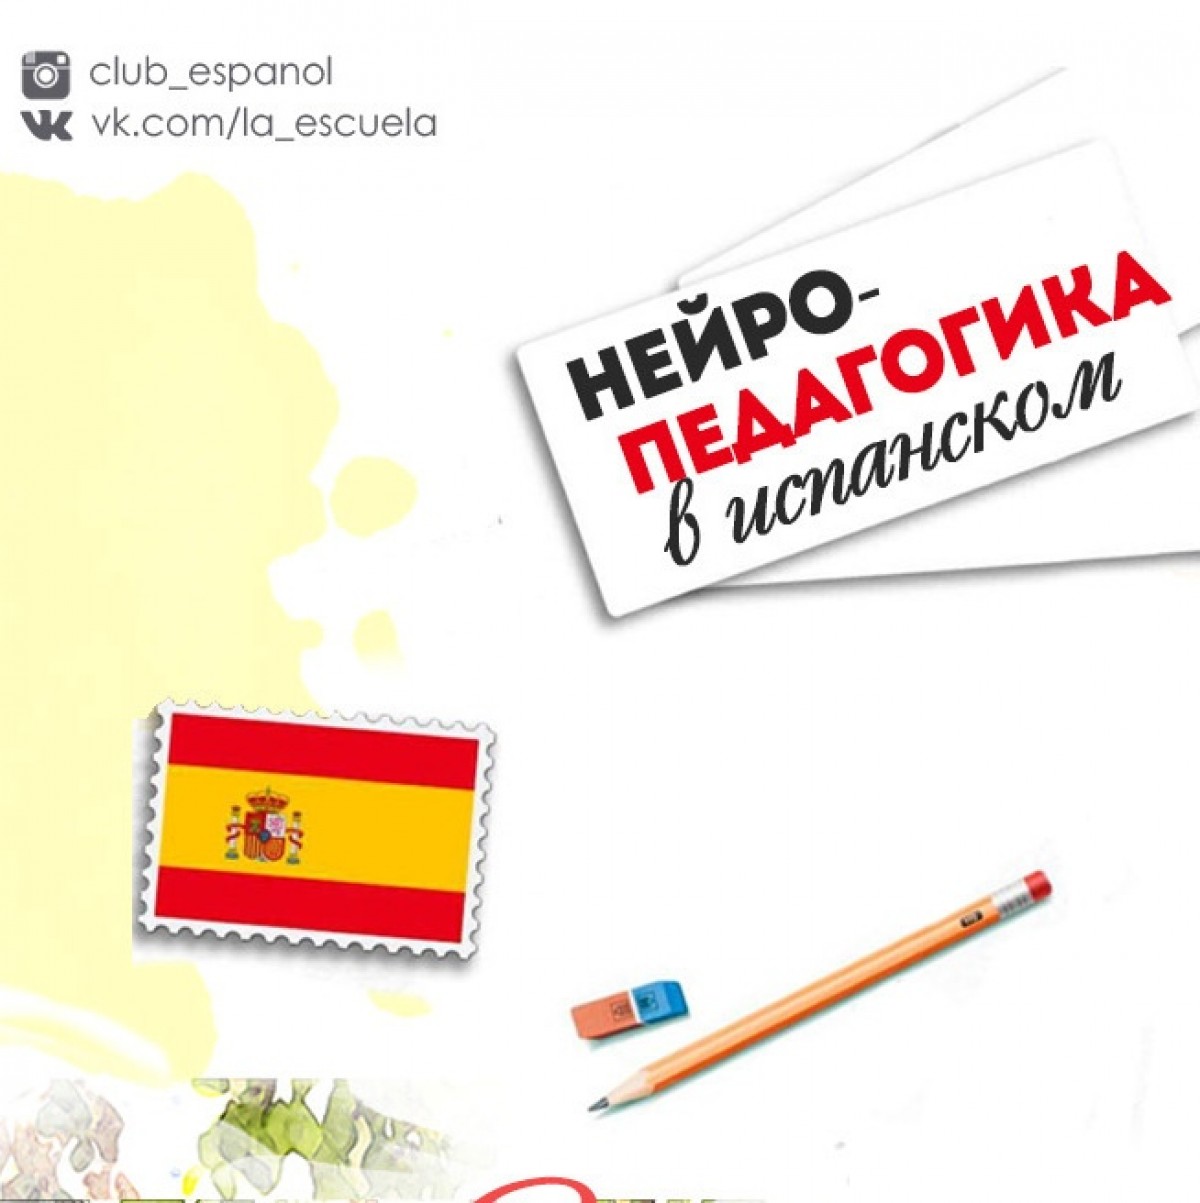 В школе испанский язык изучают 90 учащихся